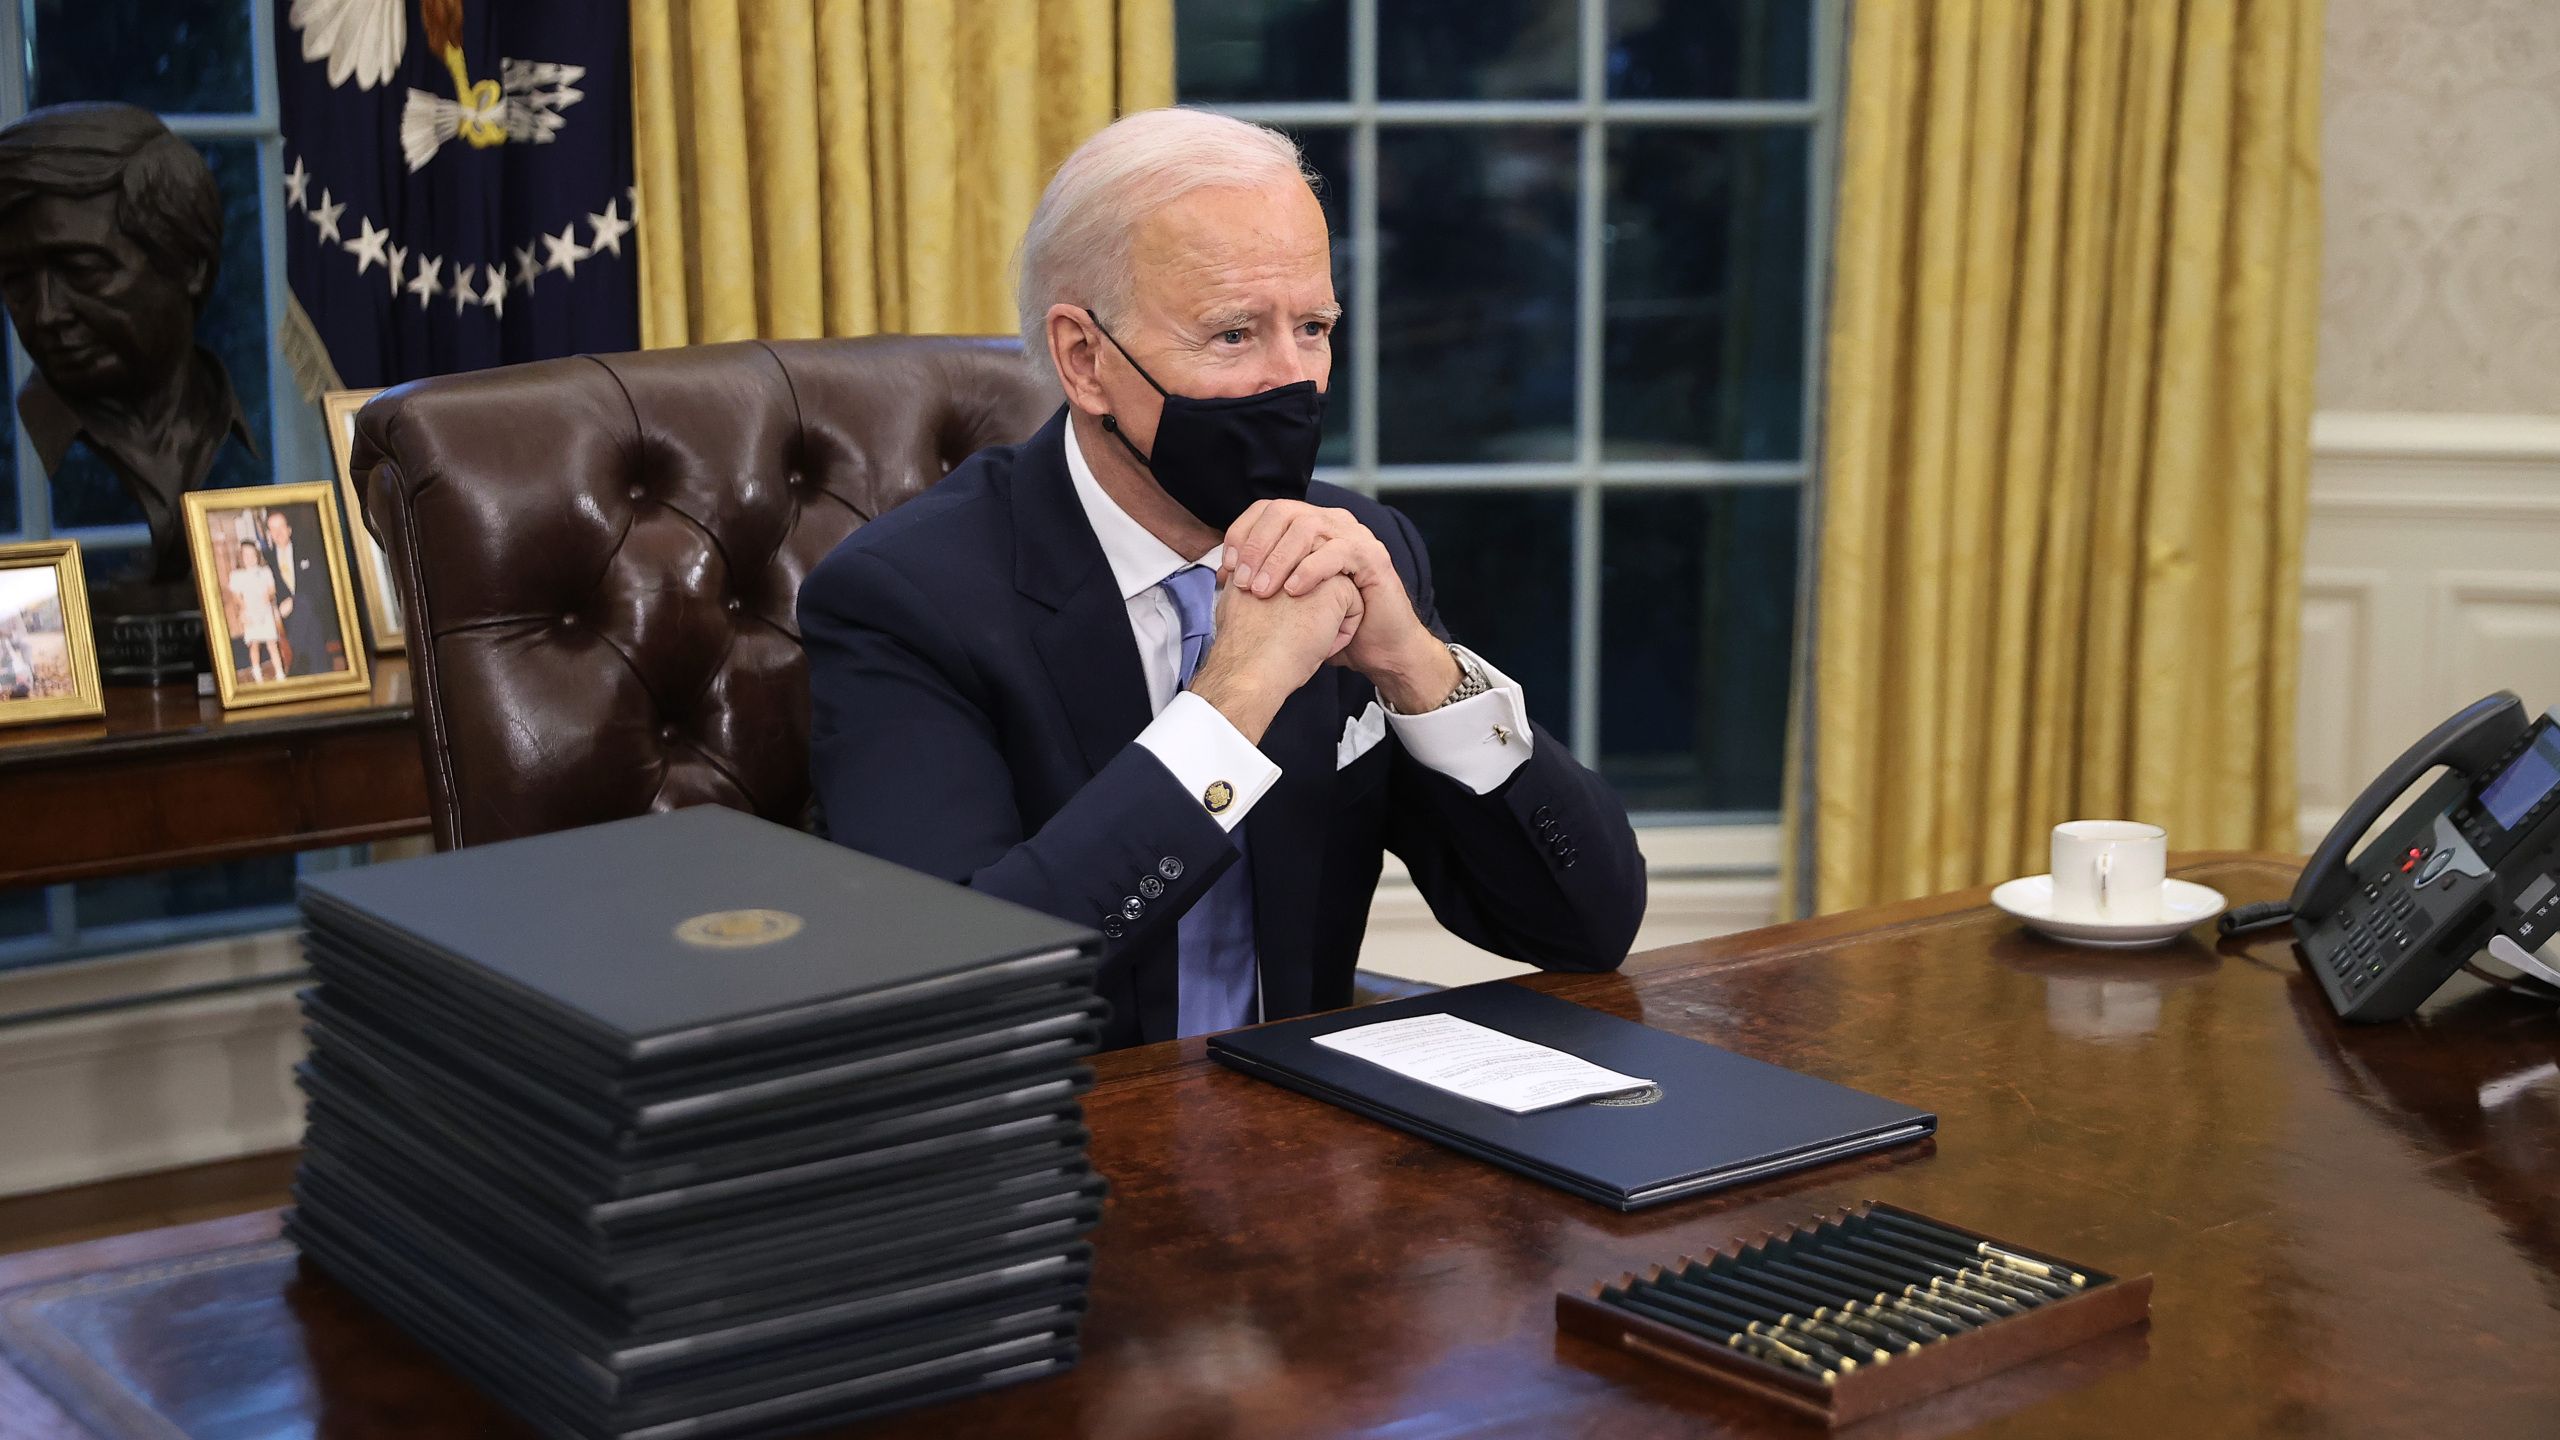 What's inside President Biden's Oval Office?